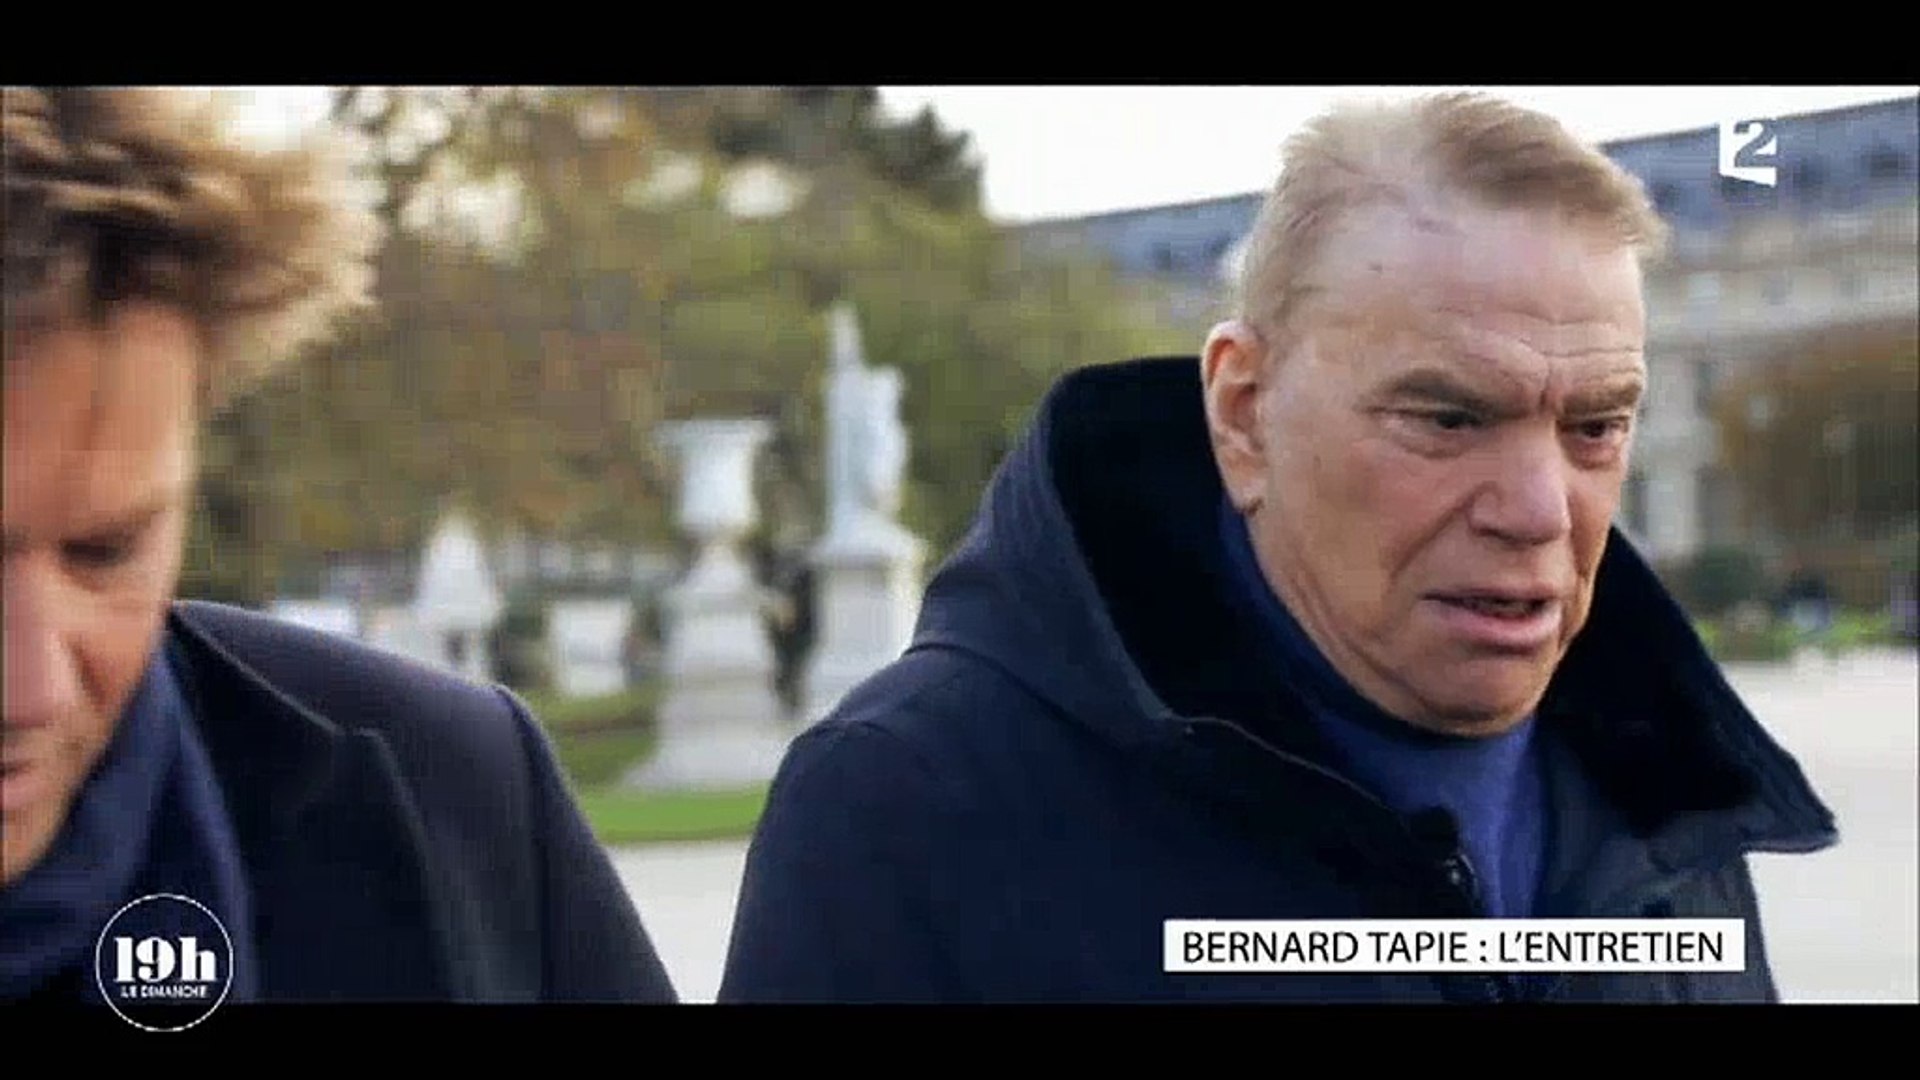 19h le dimanche" : Affaibli, Bernard Tapie craque face à Laurent Delahousse  - Vidéo Dailymotion